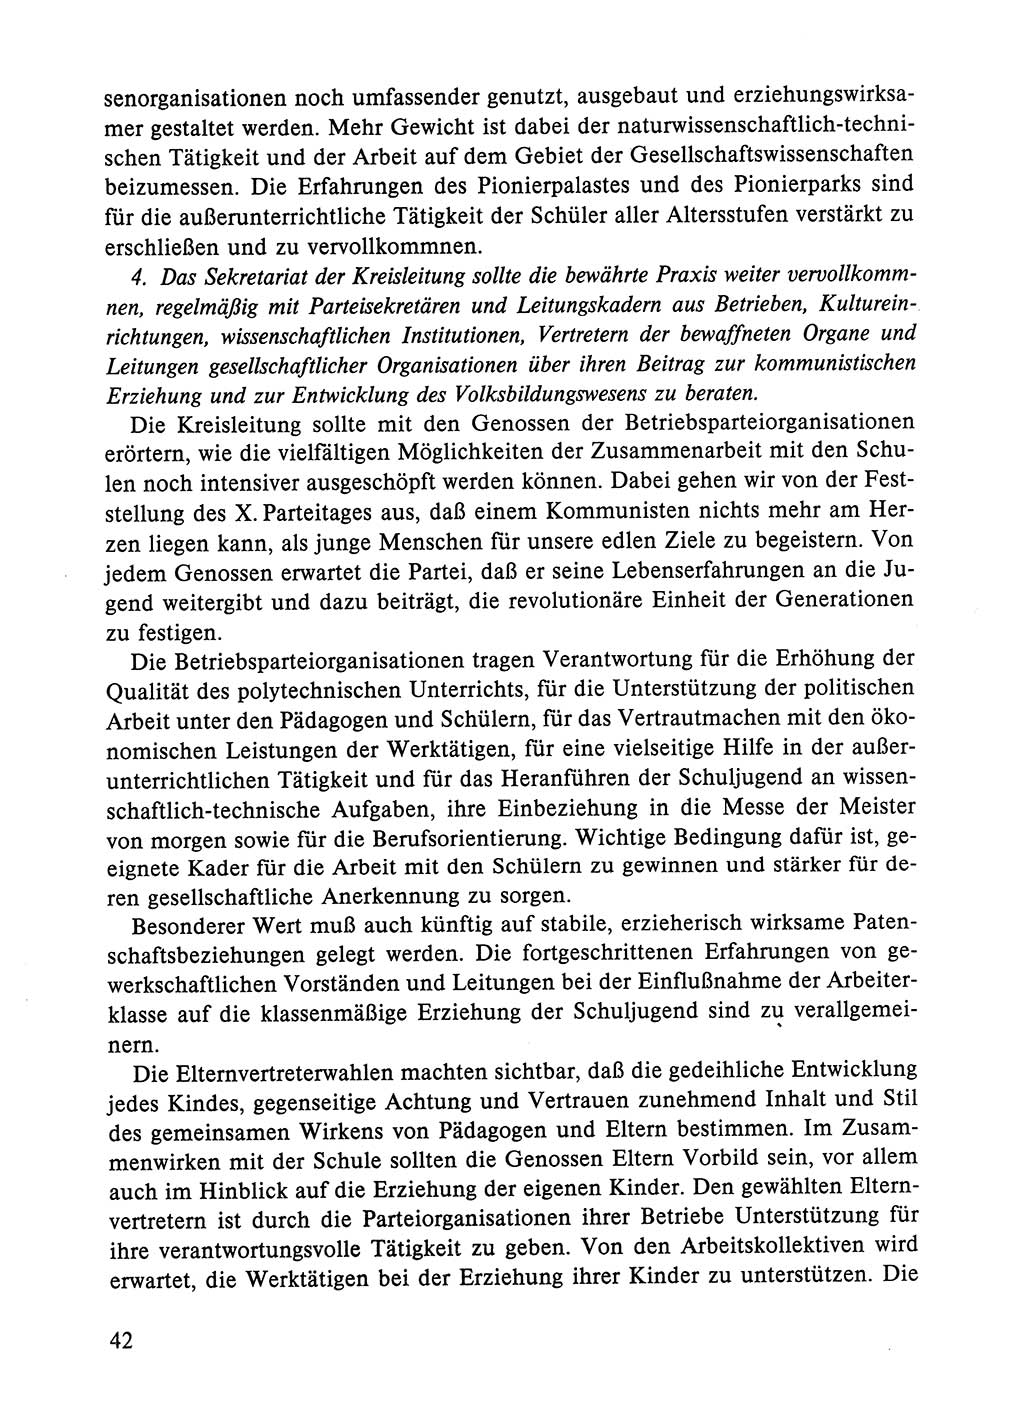 Dokumente der Sozialistischen Einheitspartei Deutschlands (SED) [Deutsche Demokratische Republik (DDR)] 1984-1985, Seite 42 (Dok. SED DDR 1984-1985, S. 42)